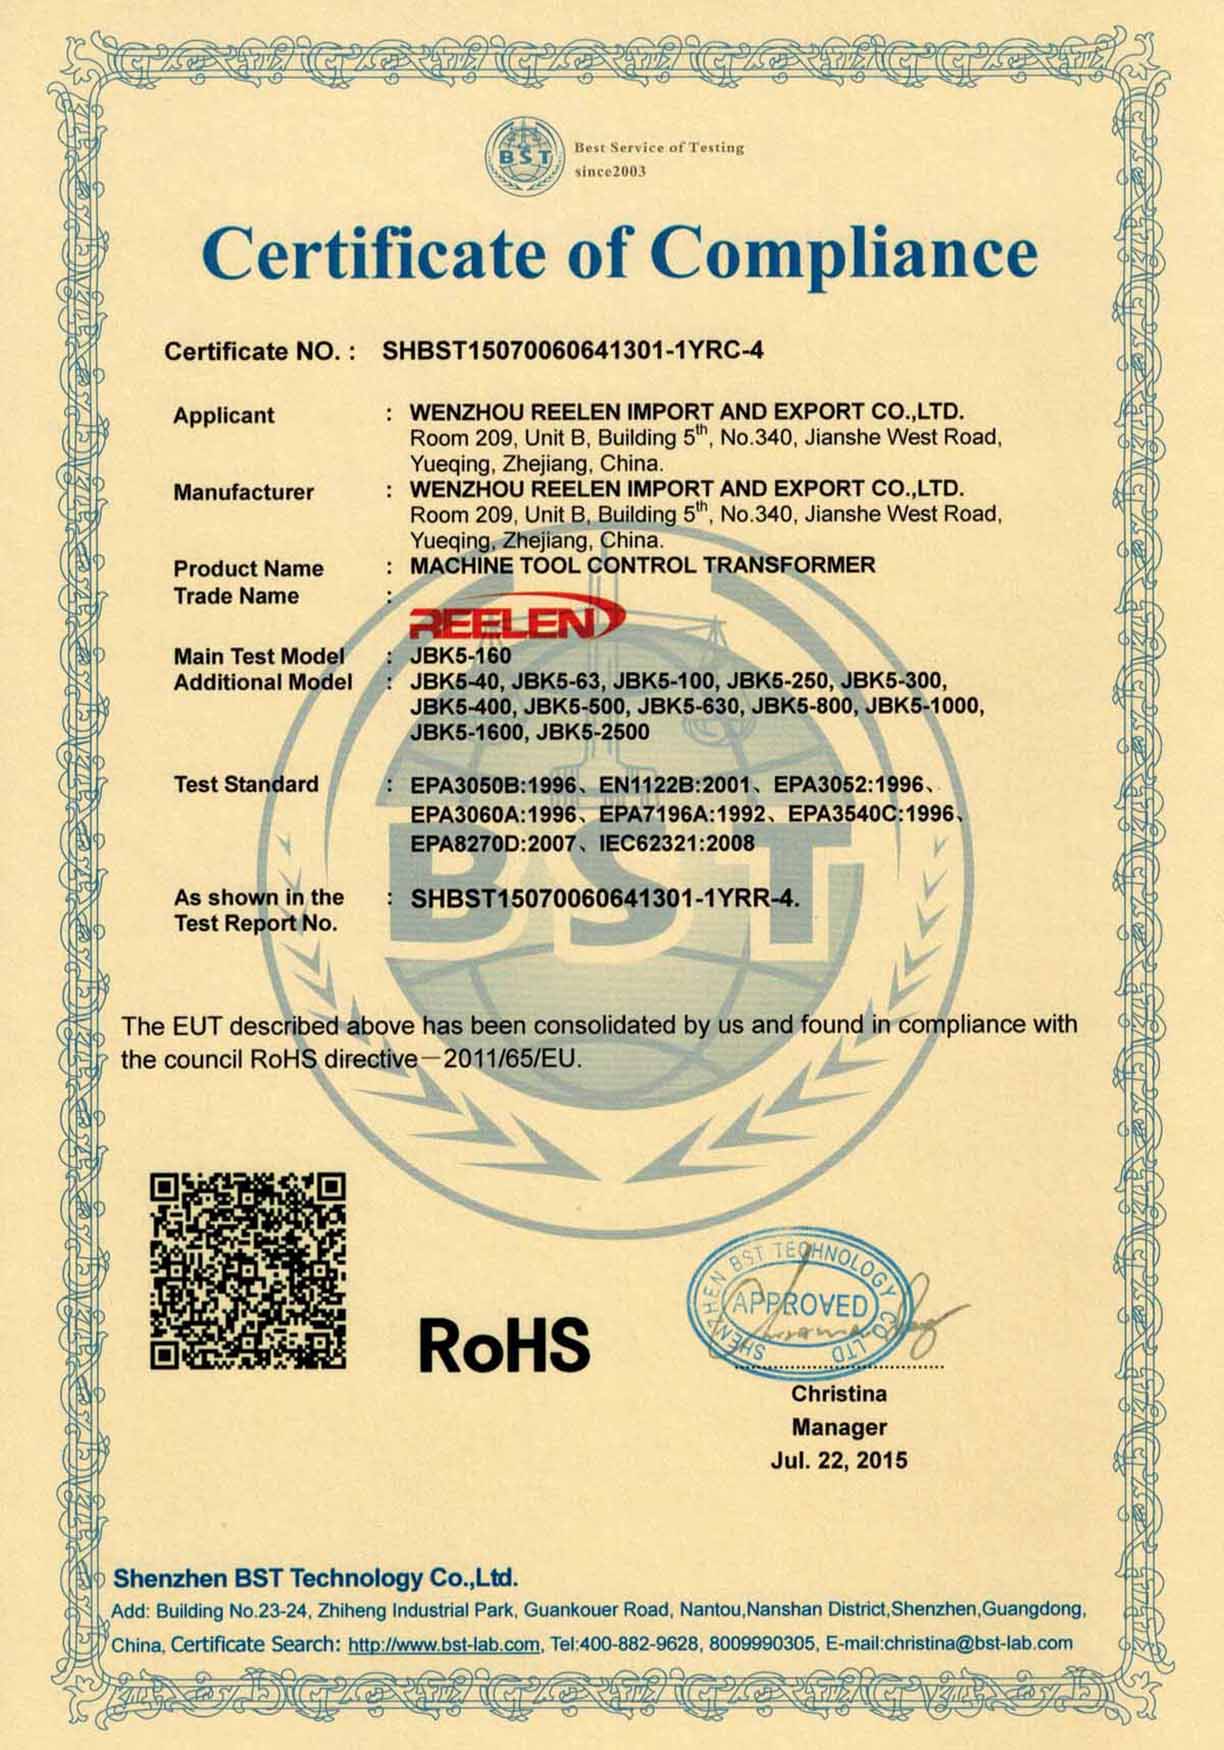 RoHS Certificate